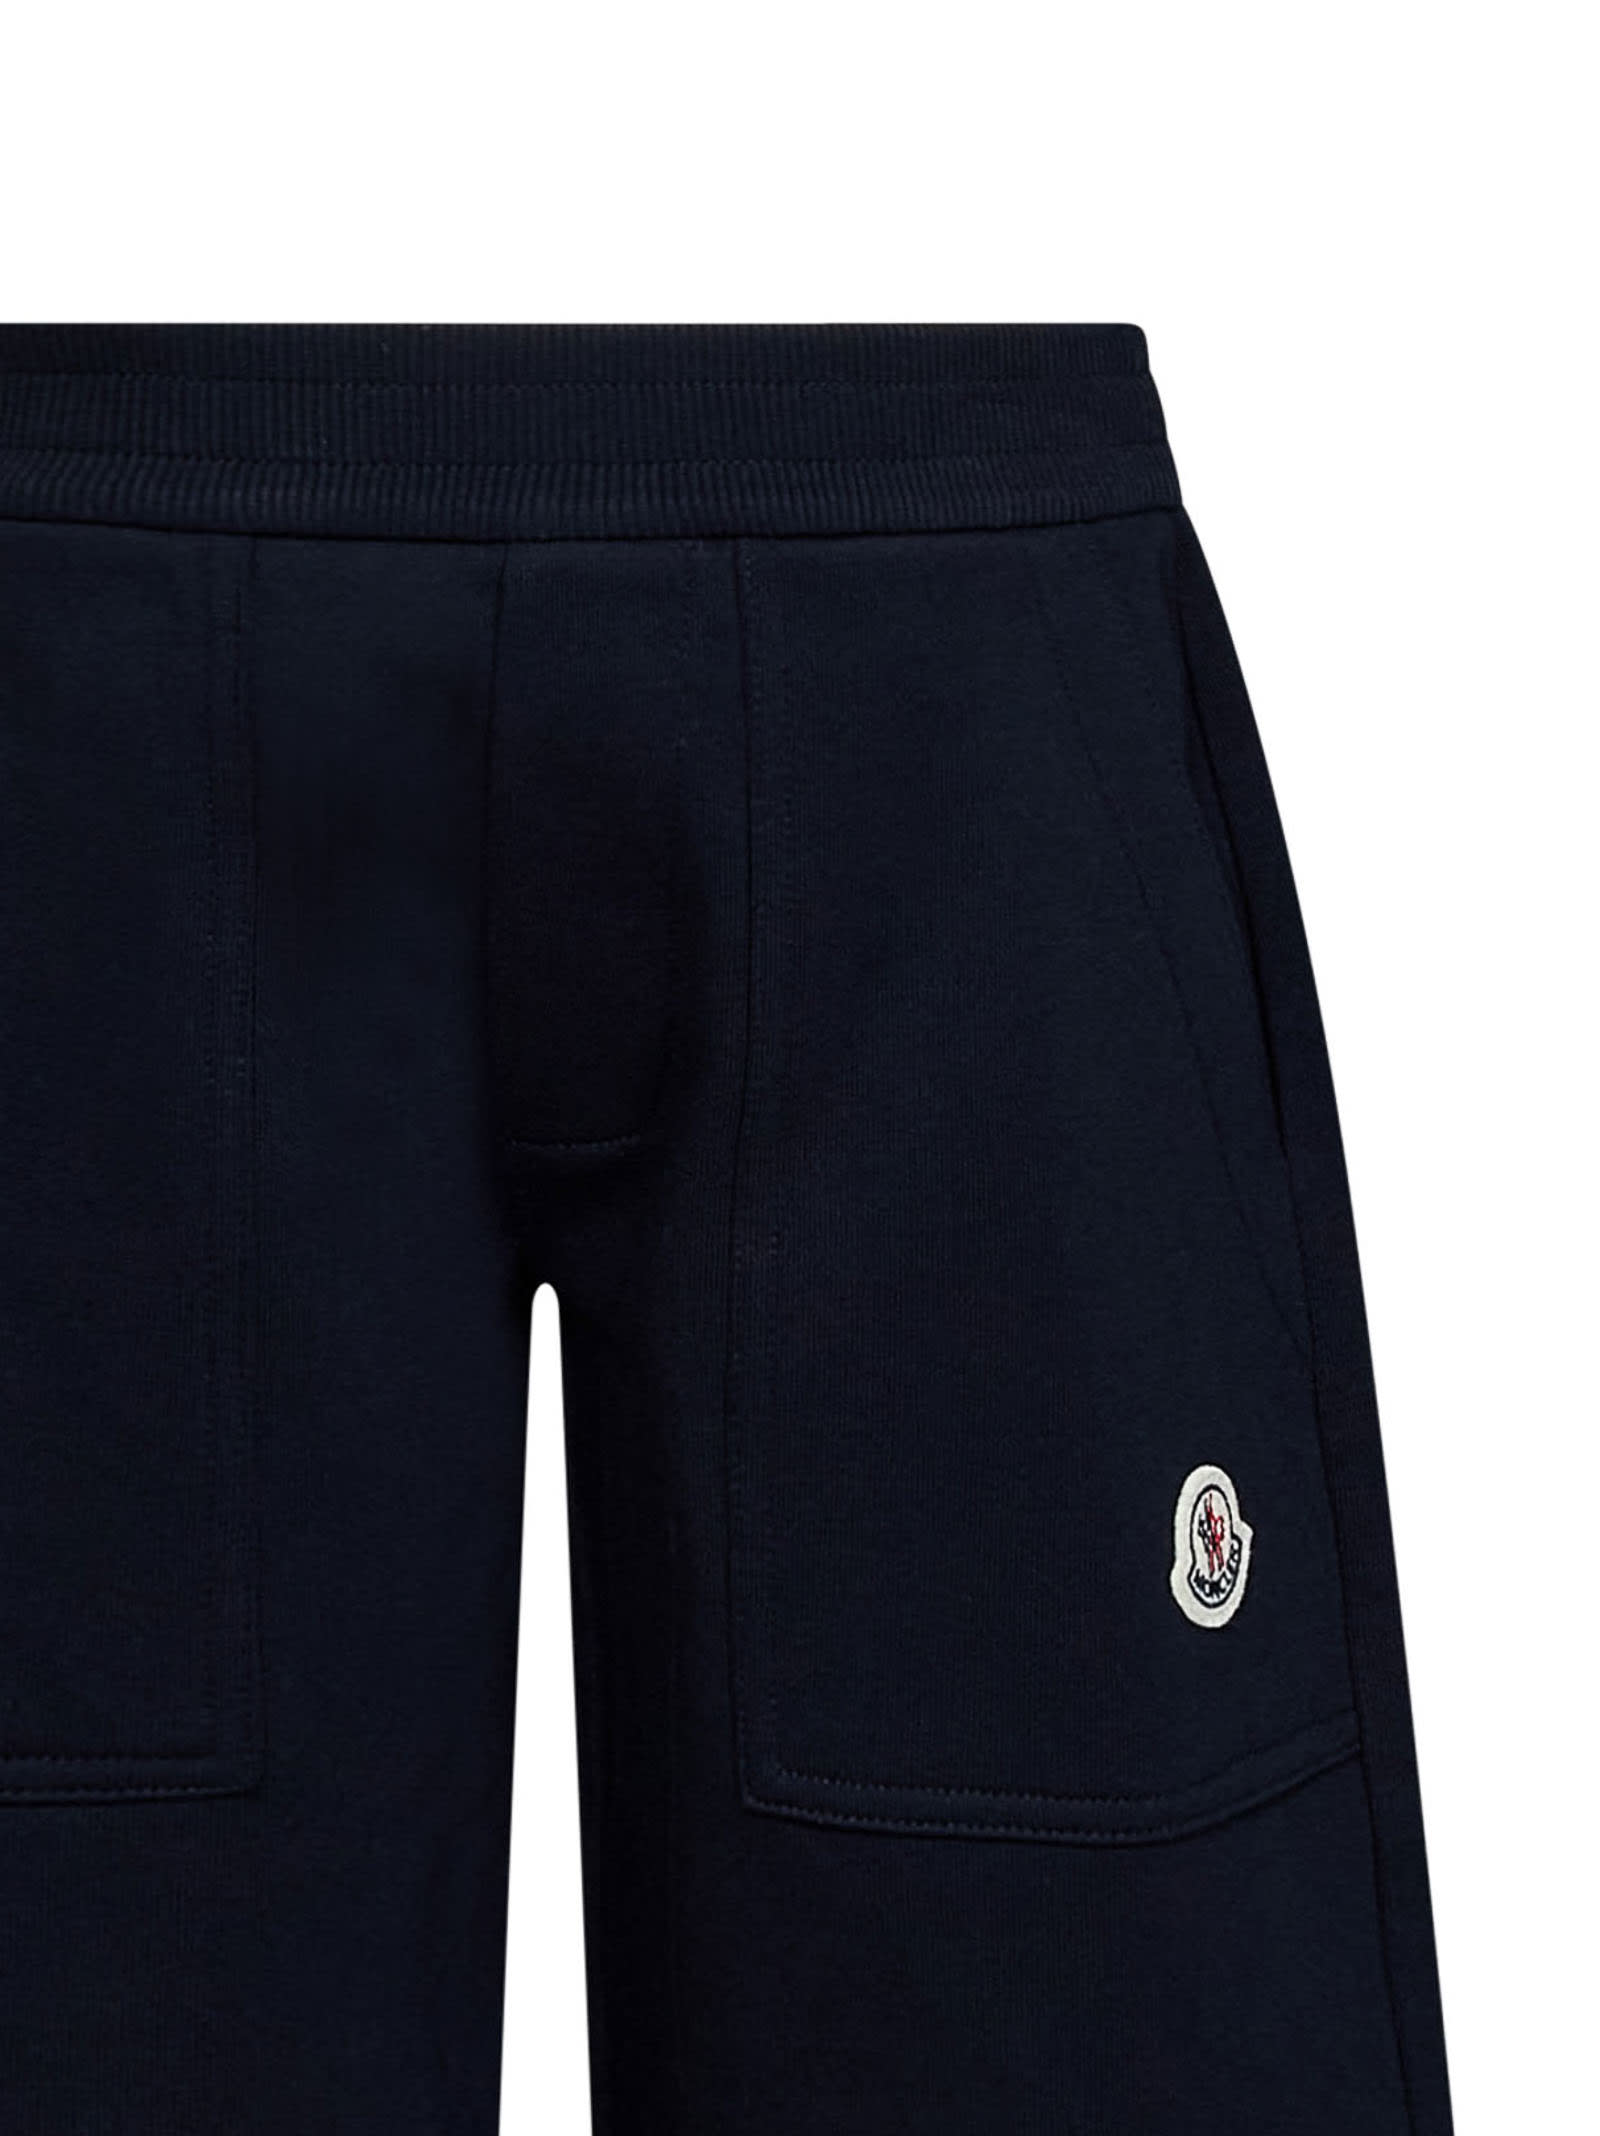 Shop Moncler Shorts